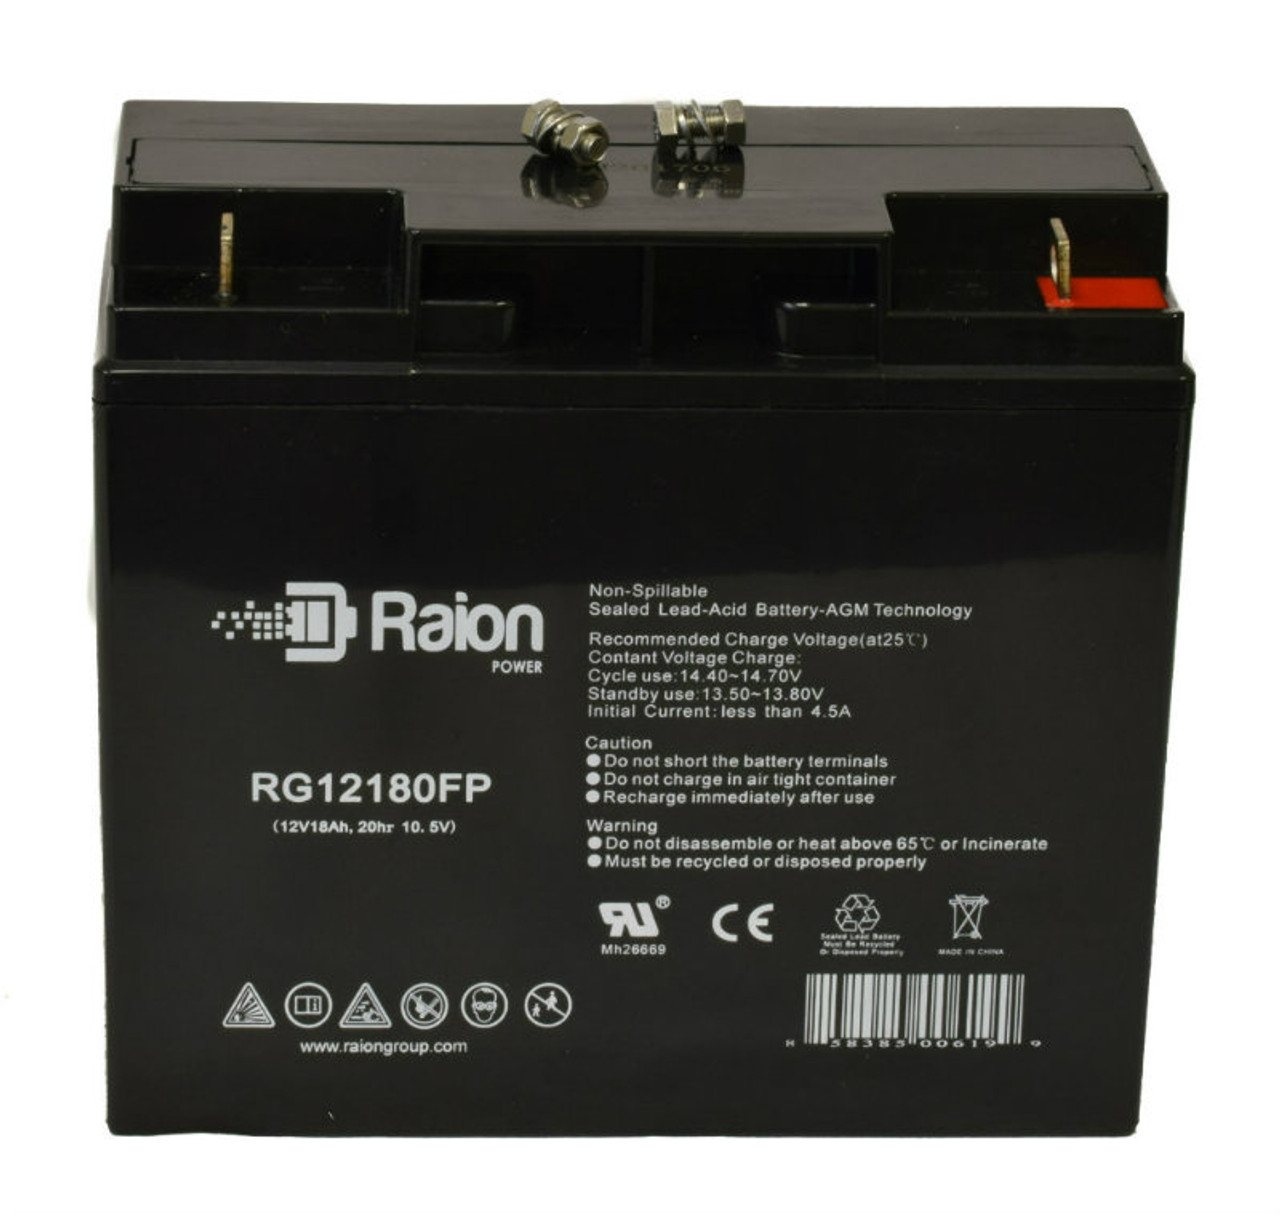 Raion Power RG12180FP 12V 18Ah Lead Acid Battery for Datascope 96 Balloon Pump